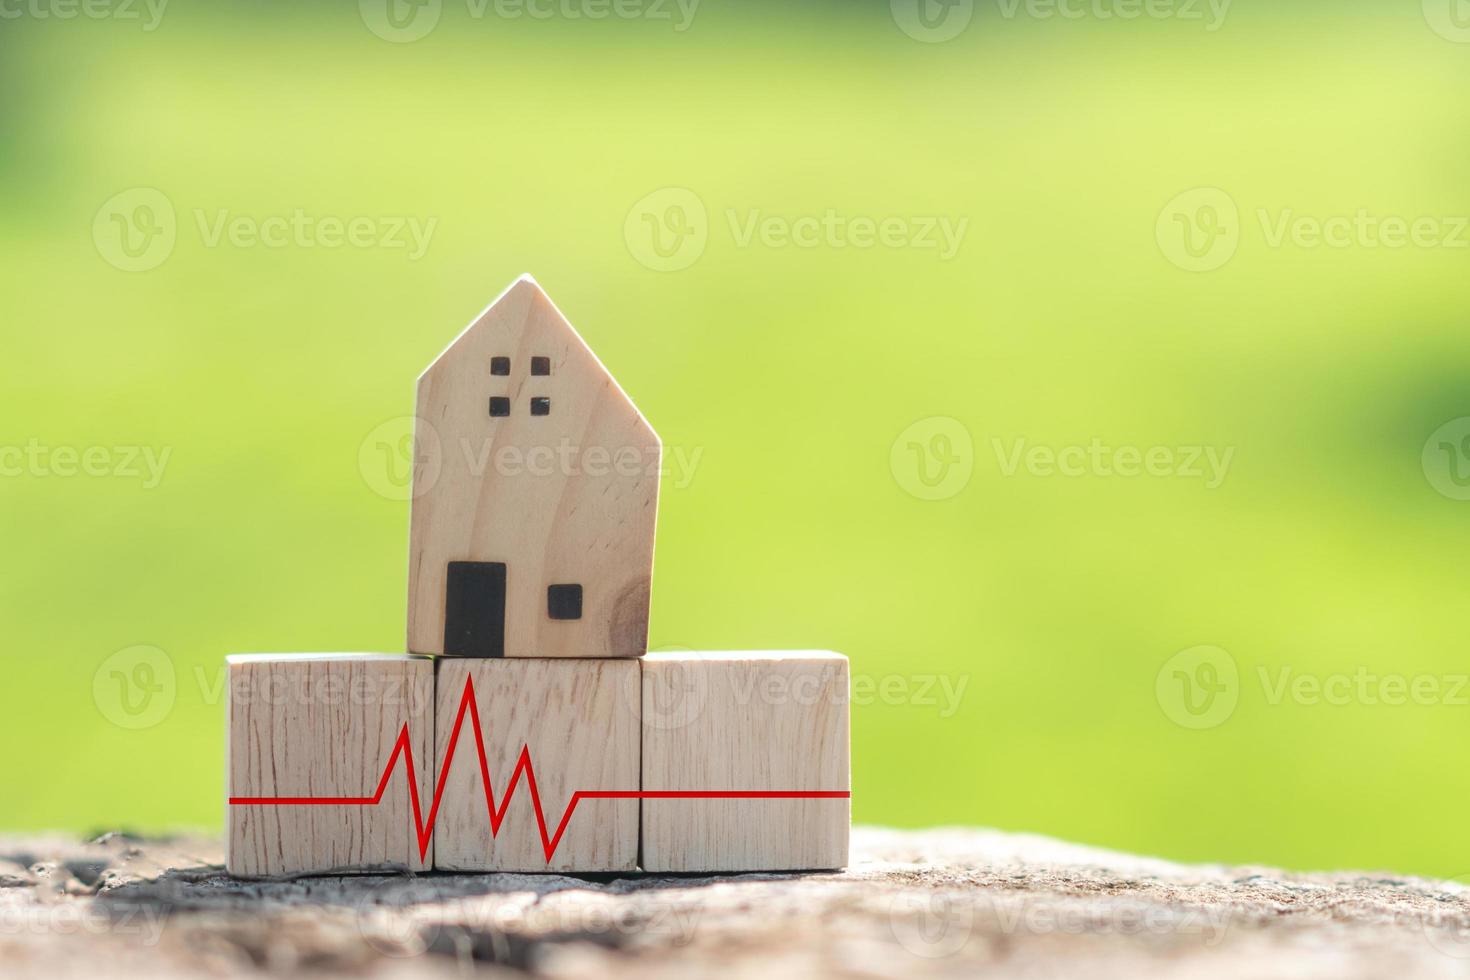 El concepto de una situación de crisis en el momento de la dificultad financiera está representado por un cubo de madera con un modelo de casa y un pulso cardíaco. foto